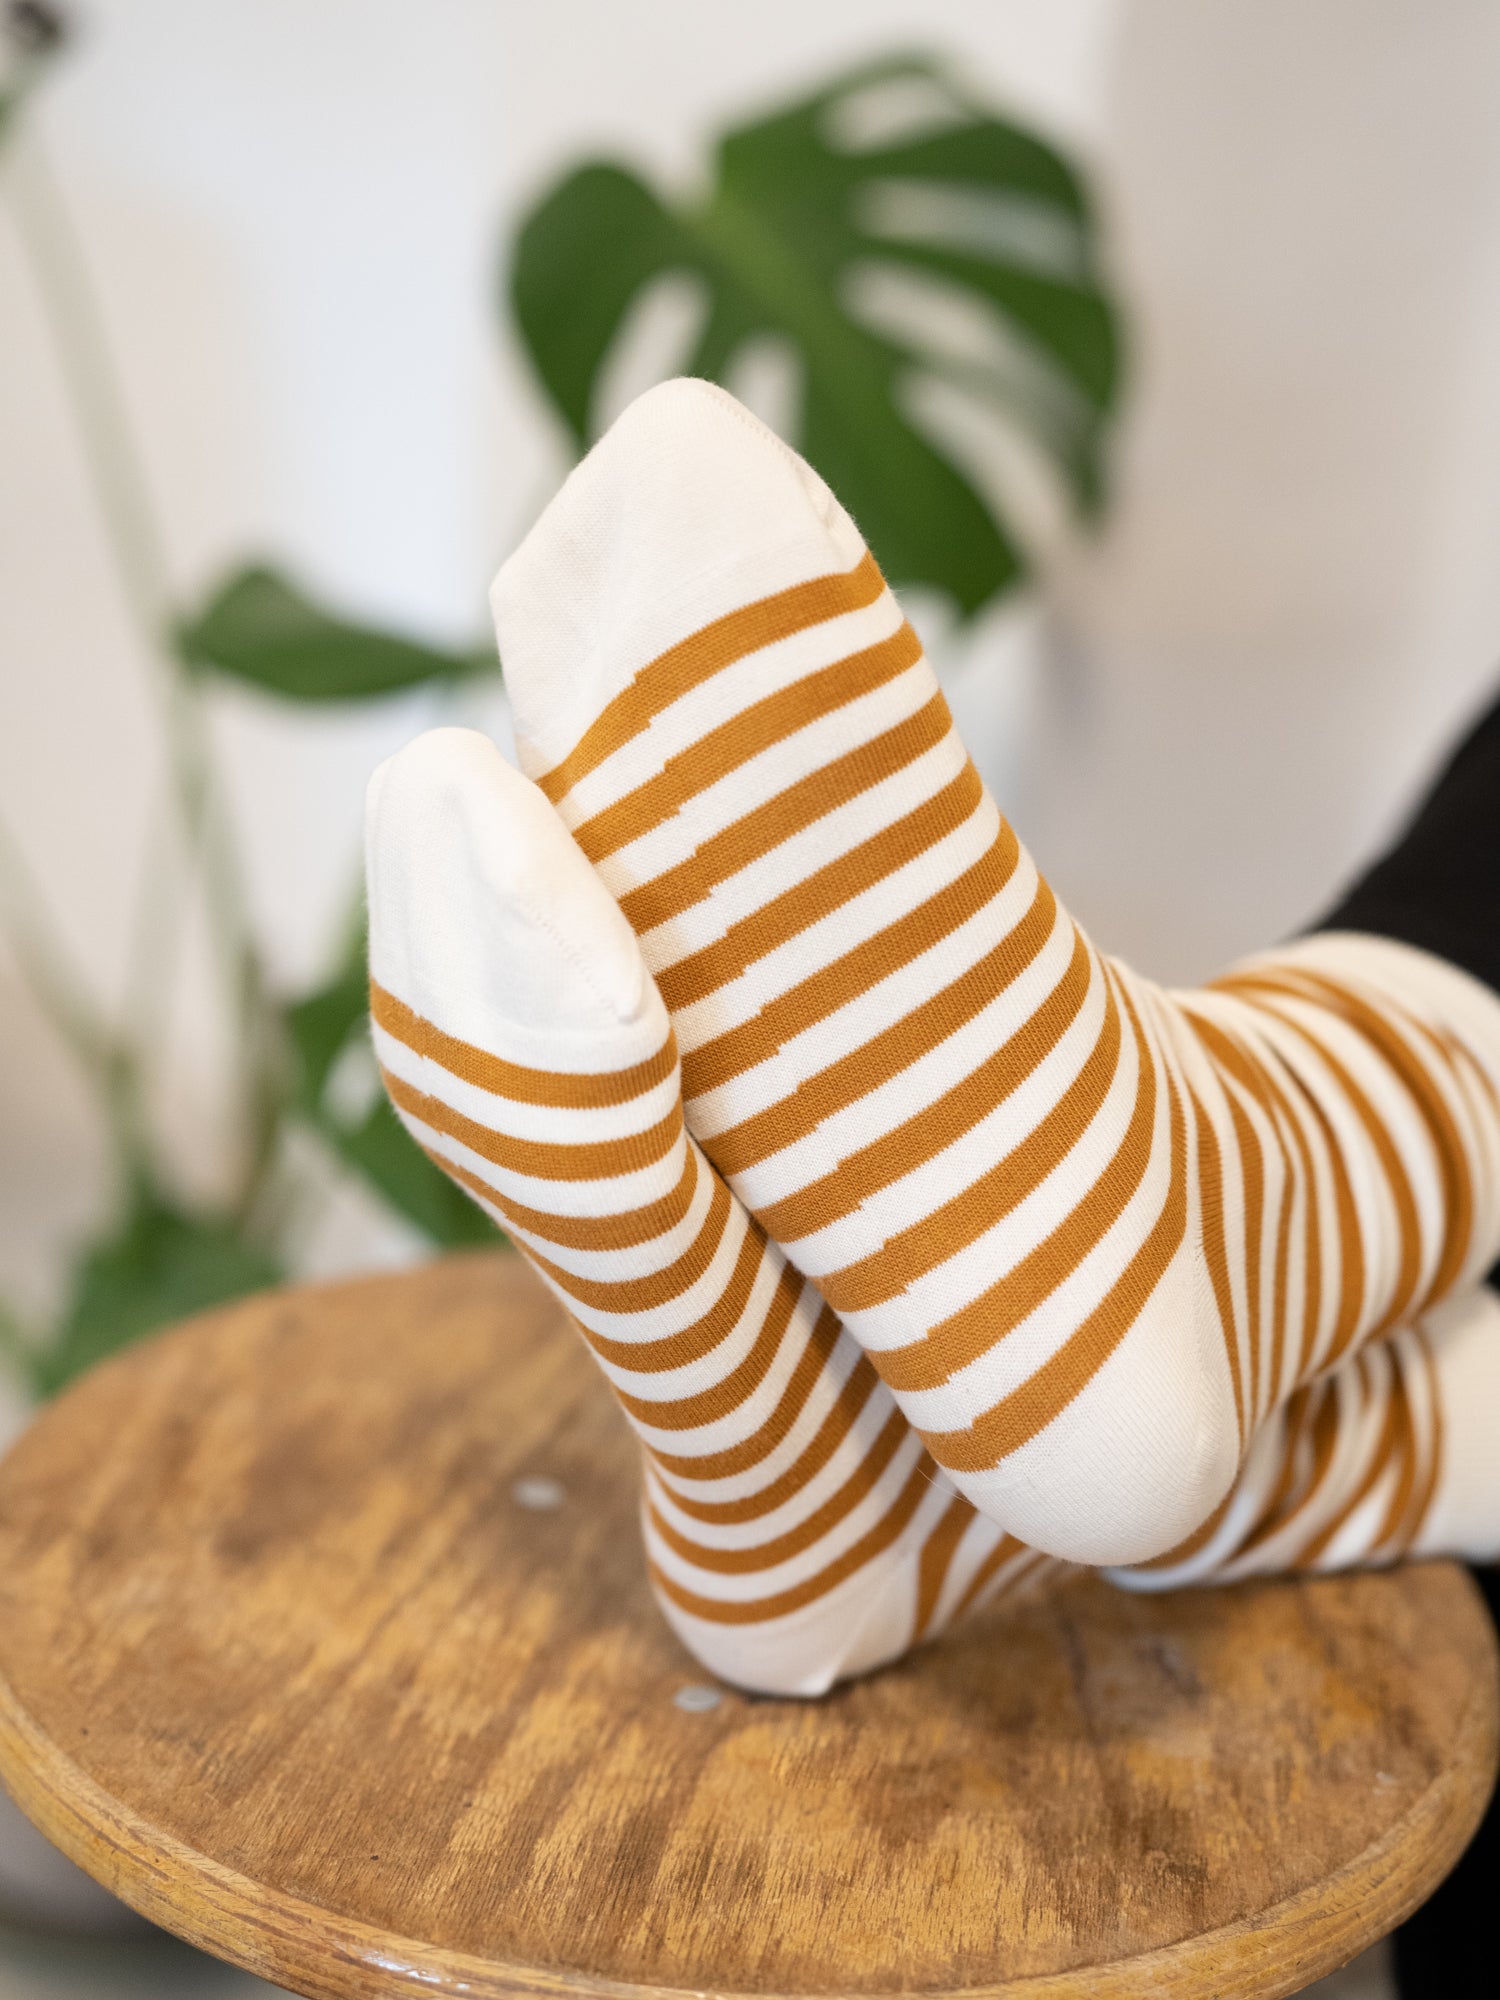 Nachhaltige Fair Fashion Unisex Socken von FUXBAU in cremeweiss senf gestreift aus 100% Biobaumwolle.